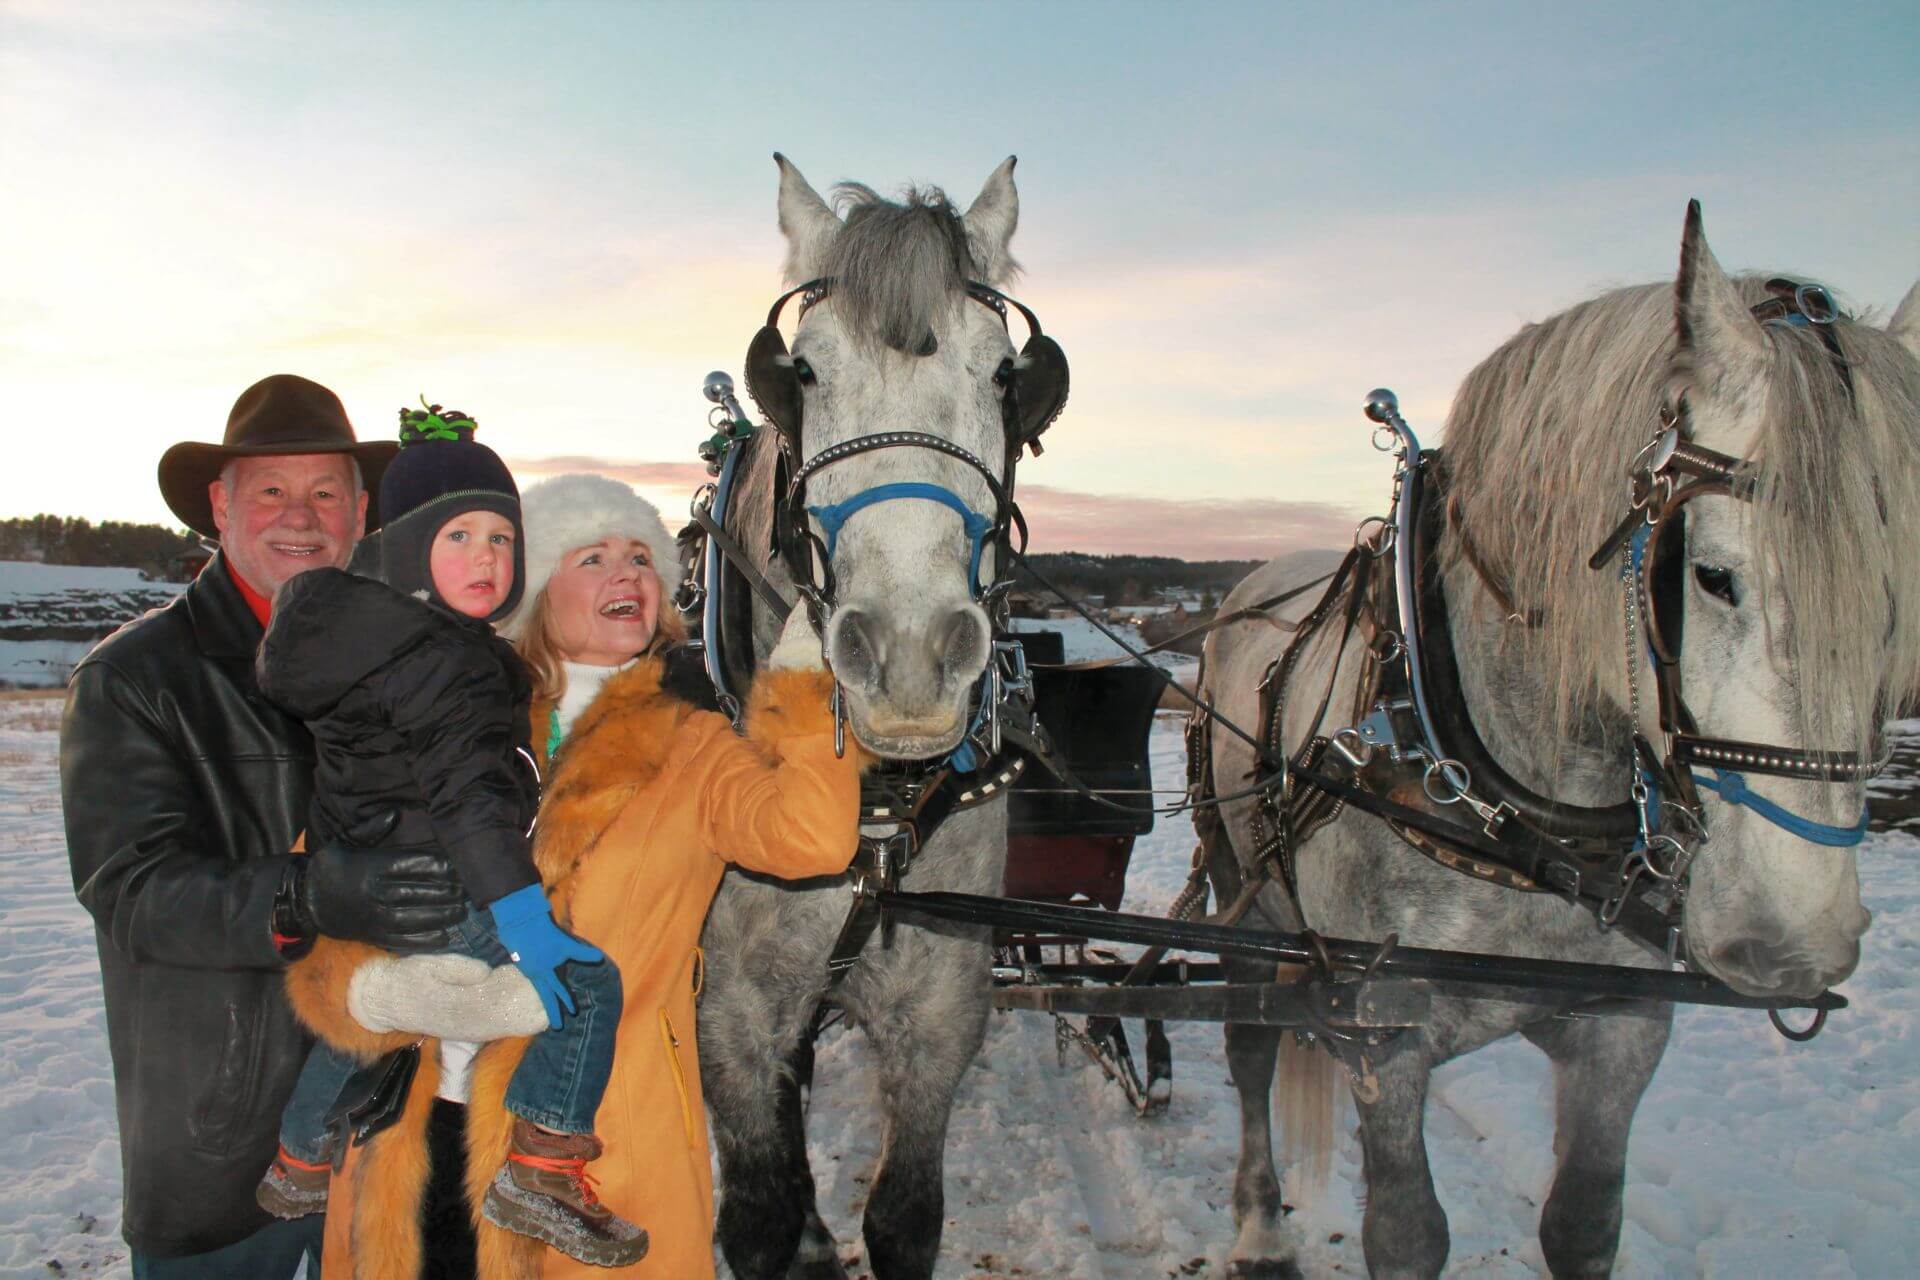 Colorado horse-drawn sleigh ride